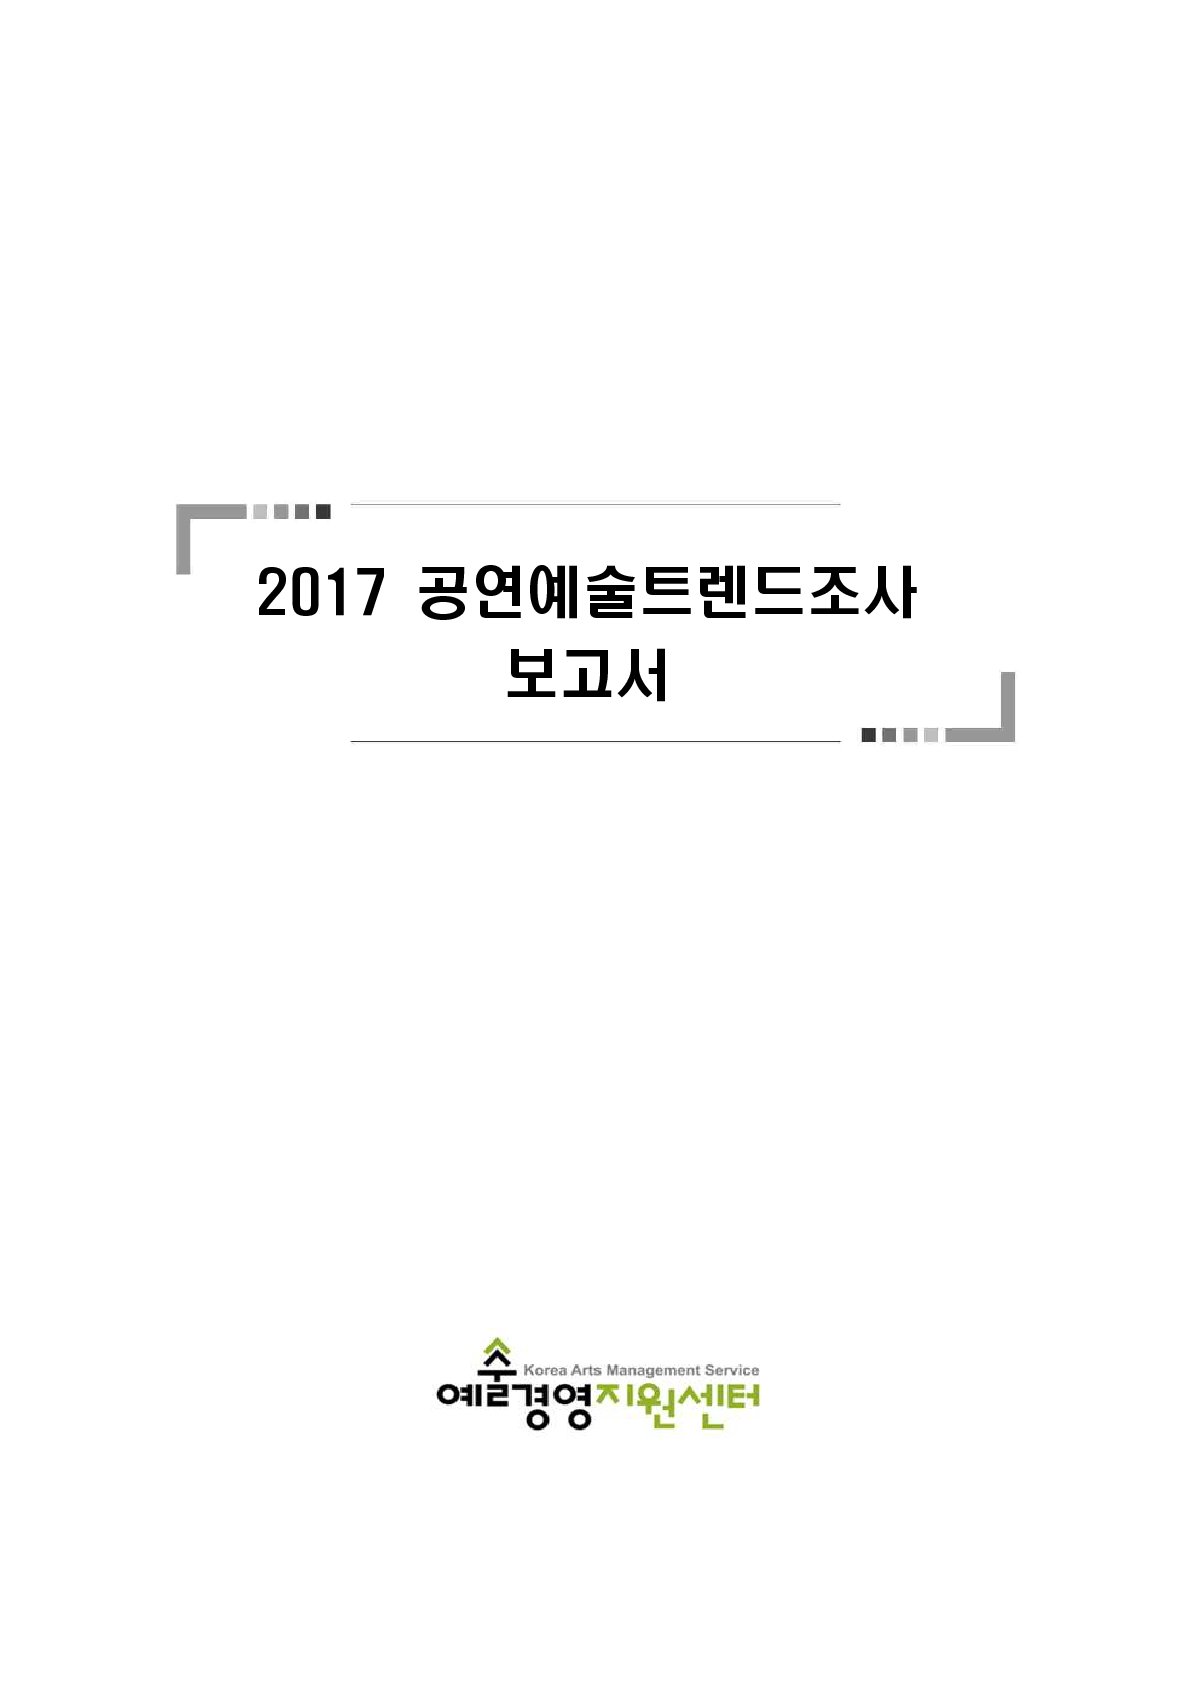 2017 공연예술트렌드조사 보고서 